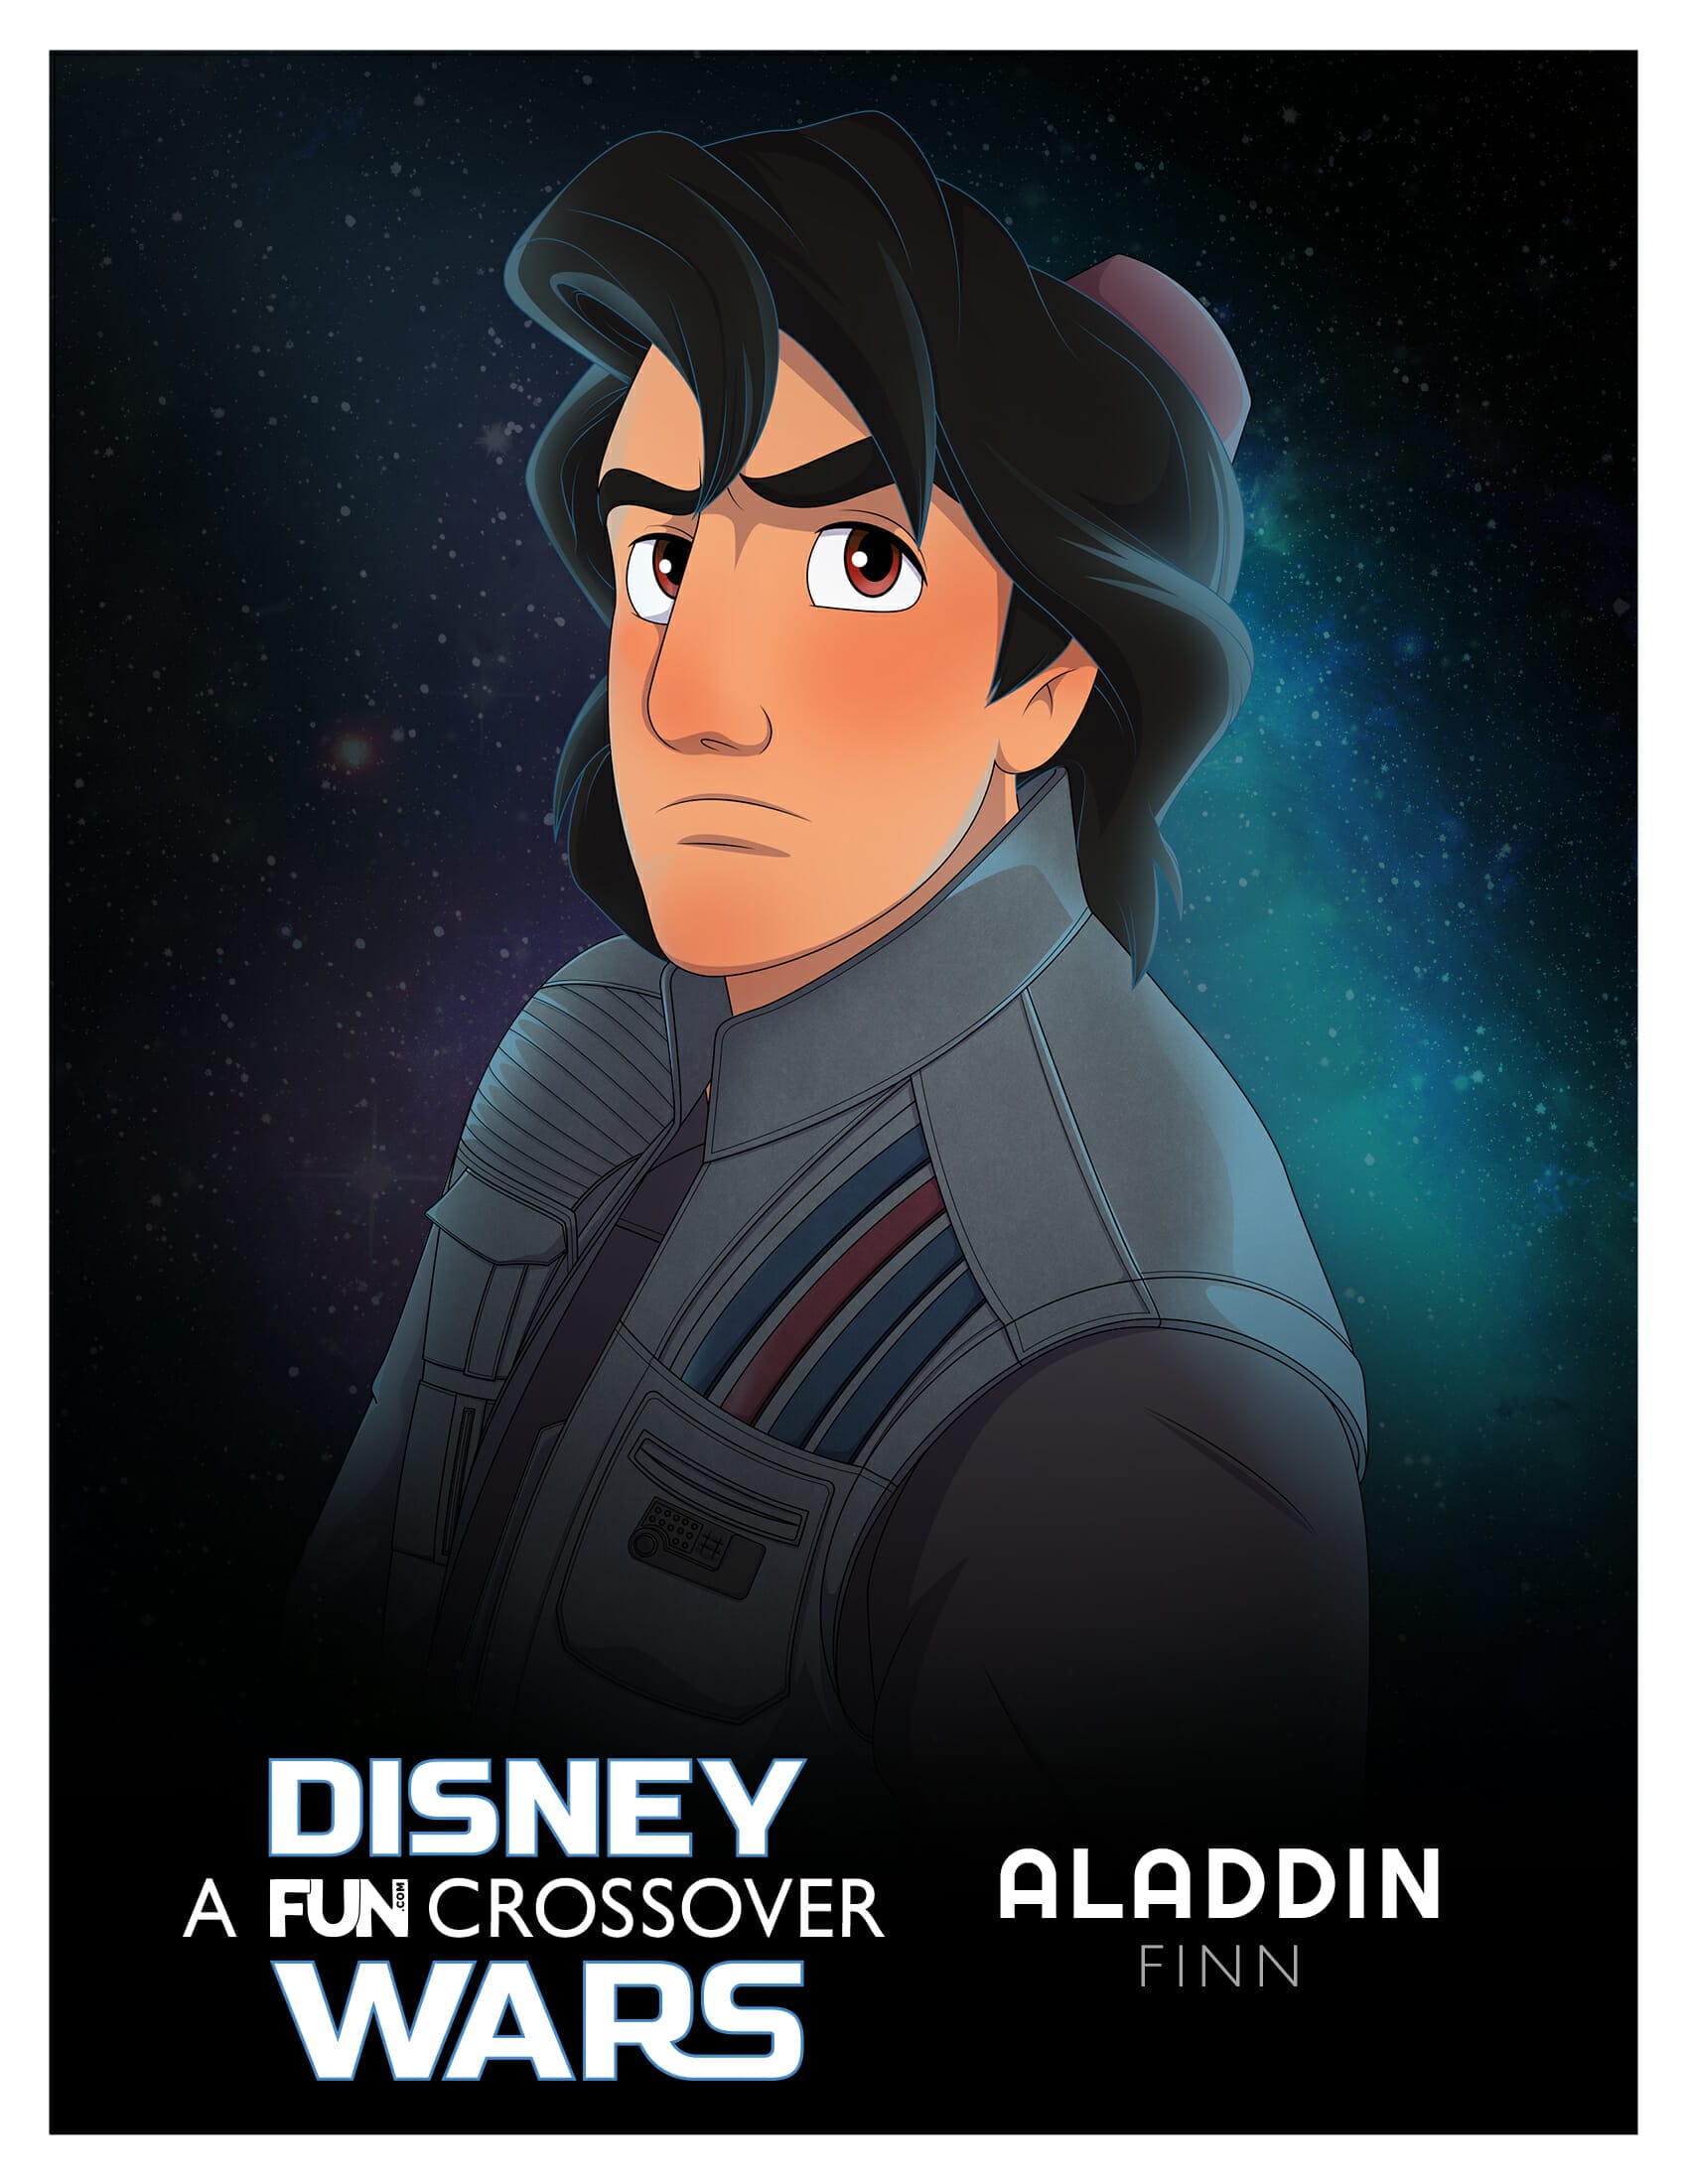 Aladdin Finn